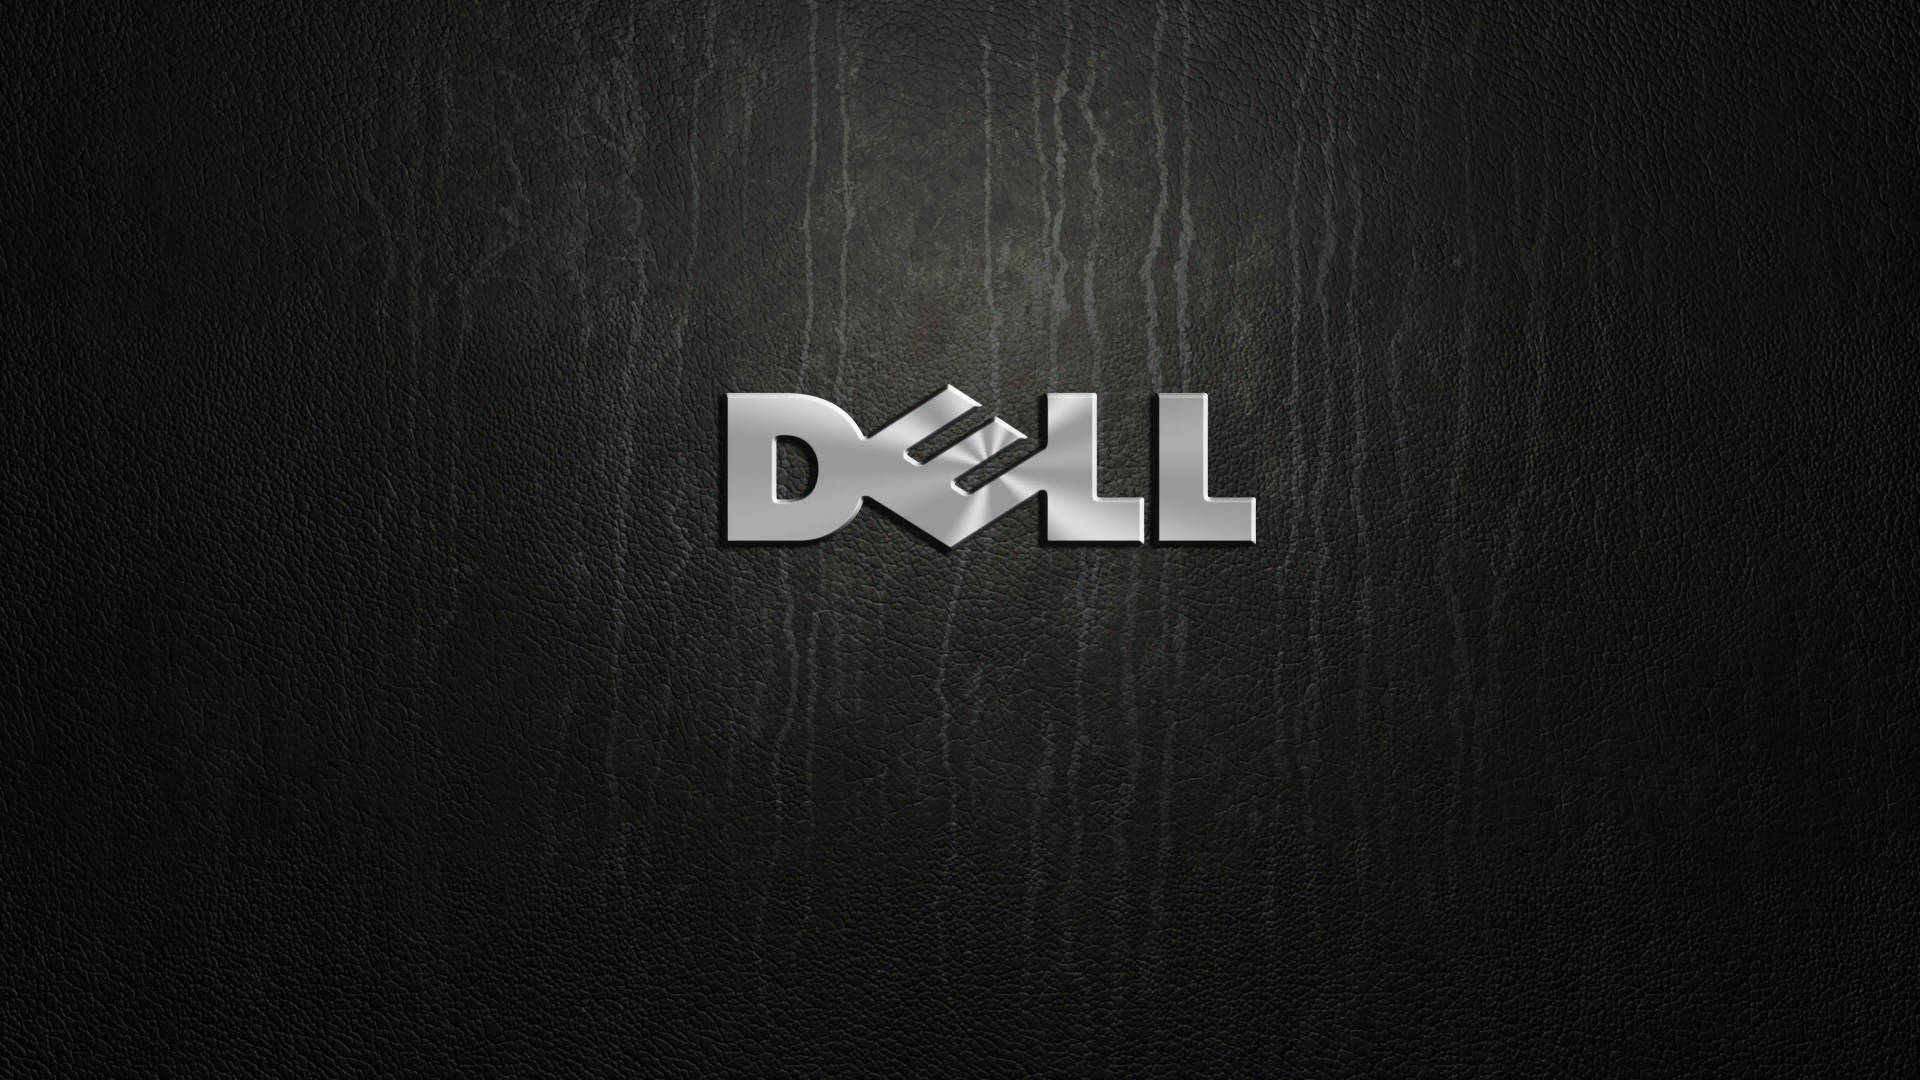 Dell 4k-logo På Træ Wallpaper